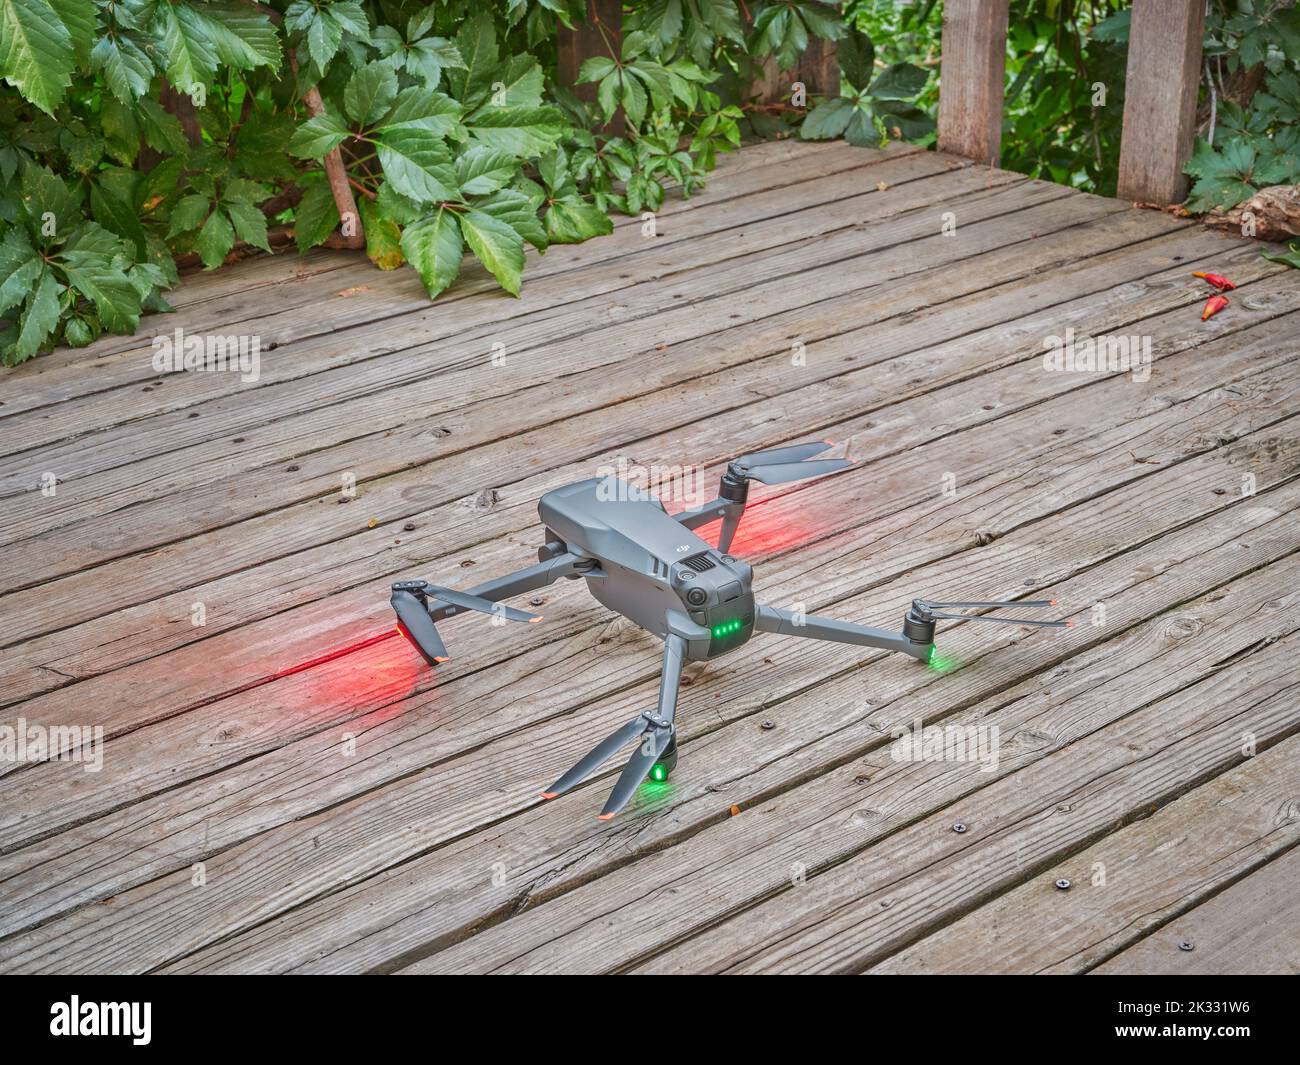 Fort Collins, CO, EE.UU. - 13 de septiembre de 2022: DJI Quadcopter drone plegable está despegando de una terraza de patio trasero o patio en el amanecer de verano. Foto de stock